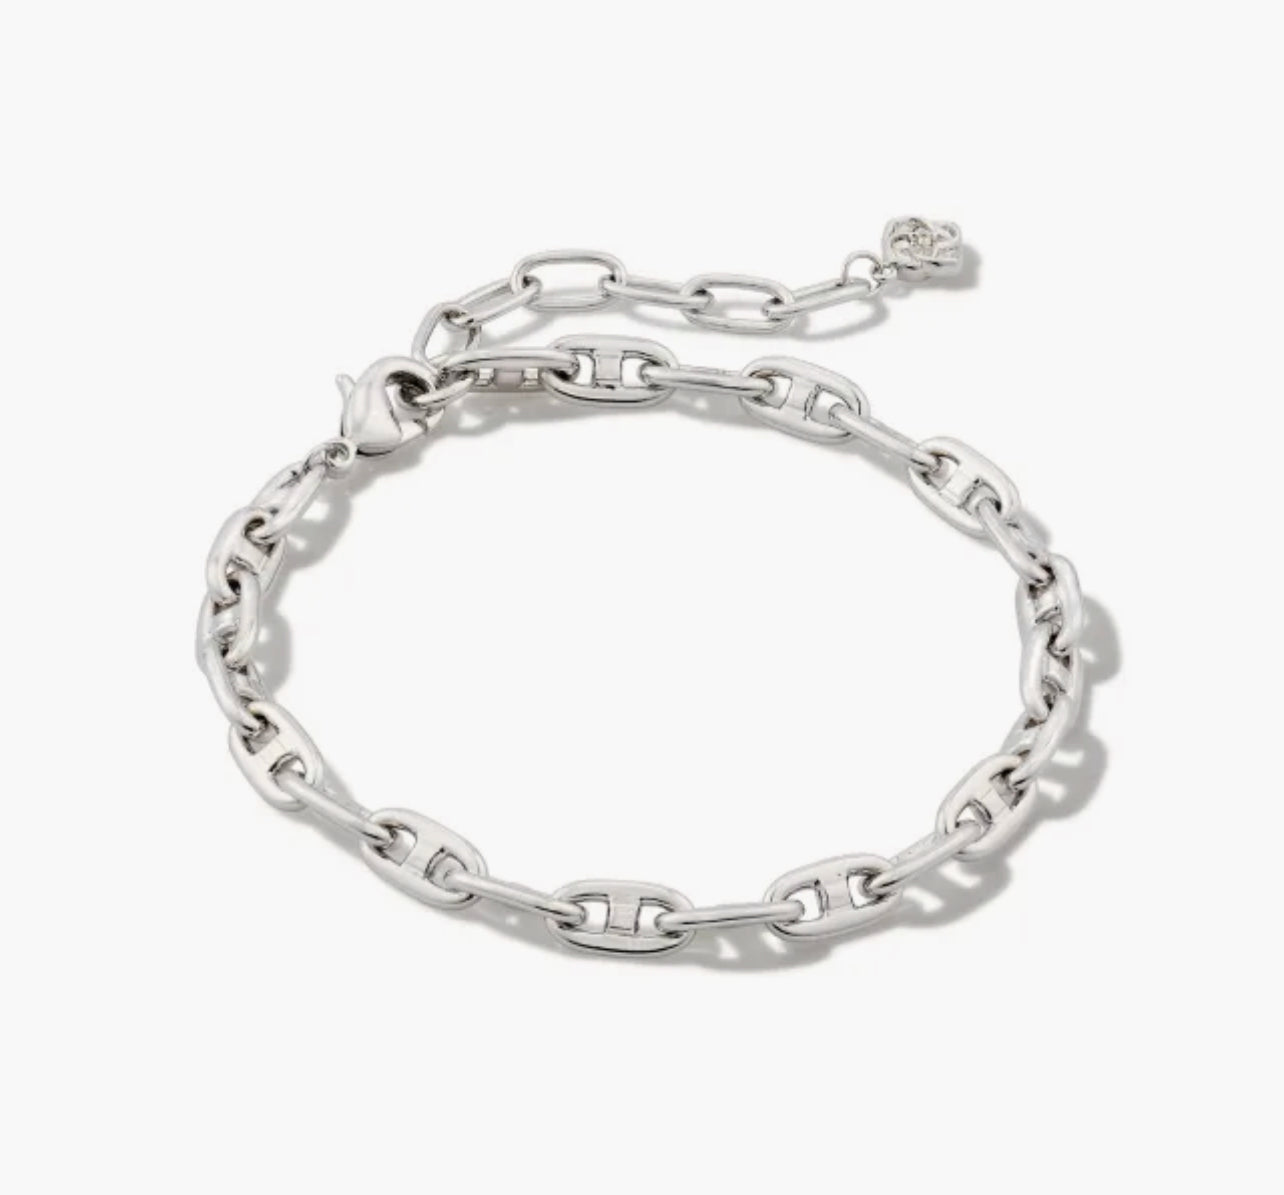 Kendra Scott-Bailey Chain Bracelet in Silver 9608851324